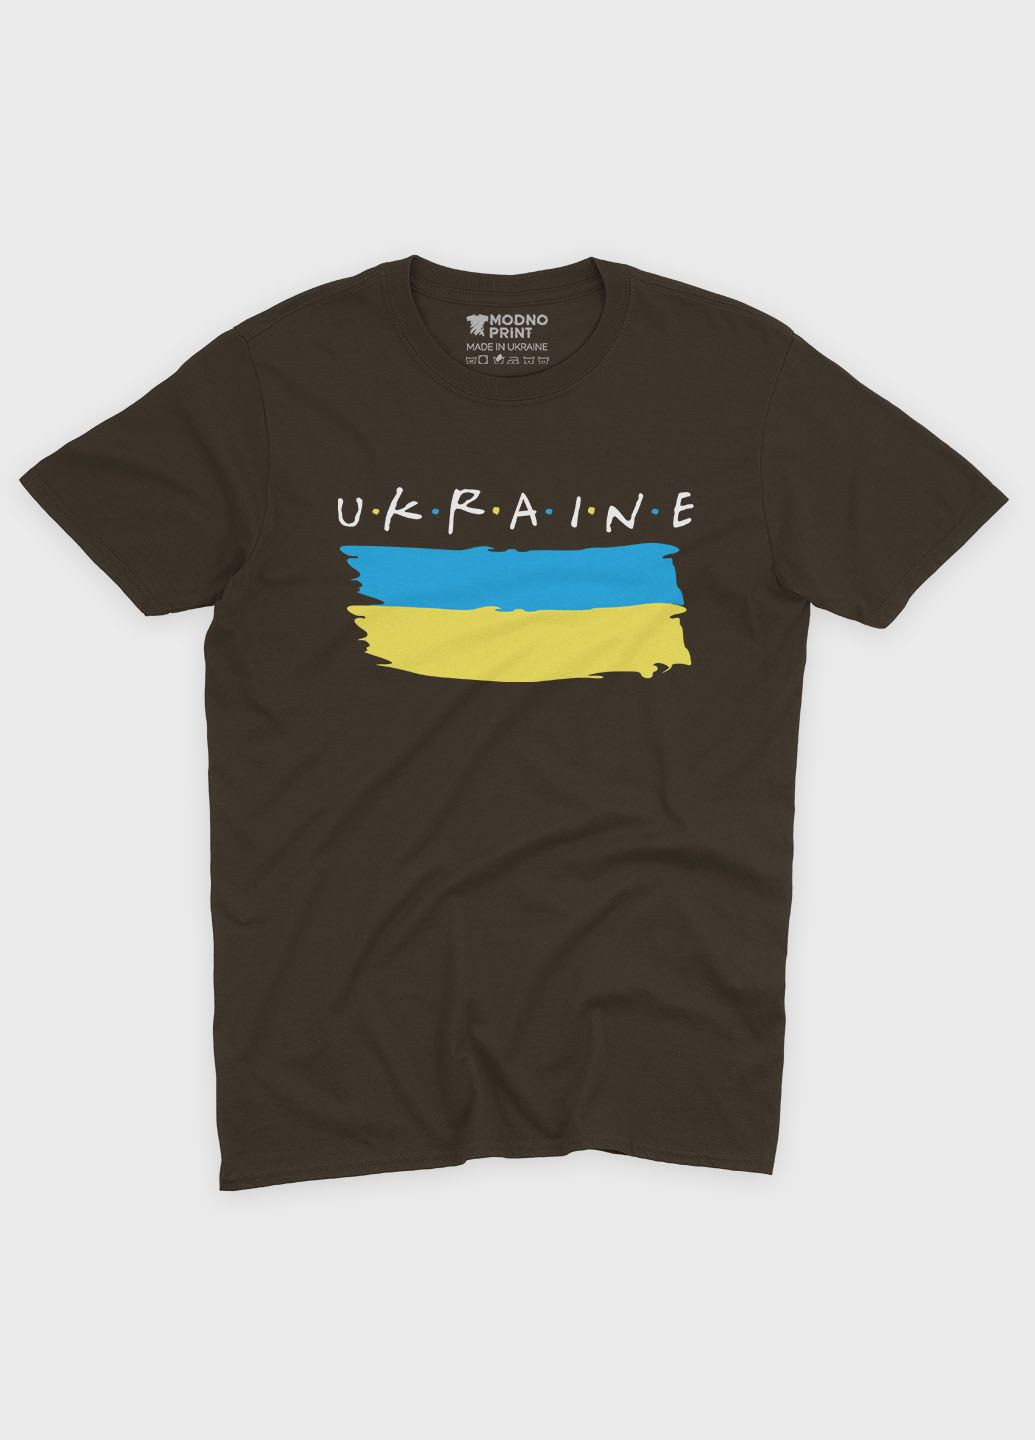 Коричневая мужская футболка с патриотическим принтом ukraine (ts001-4-dch-005-1-090) Modno